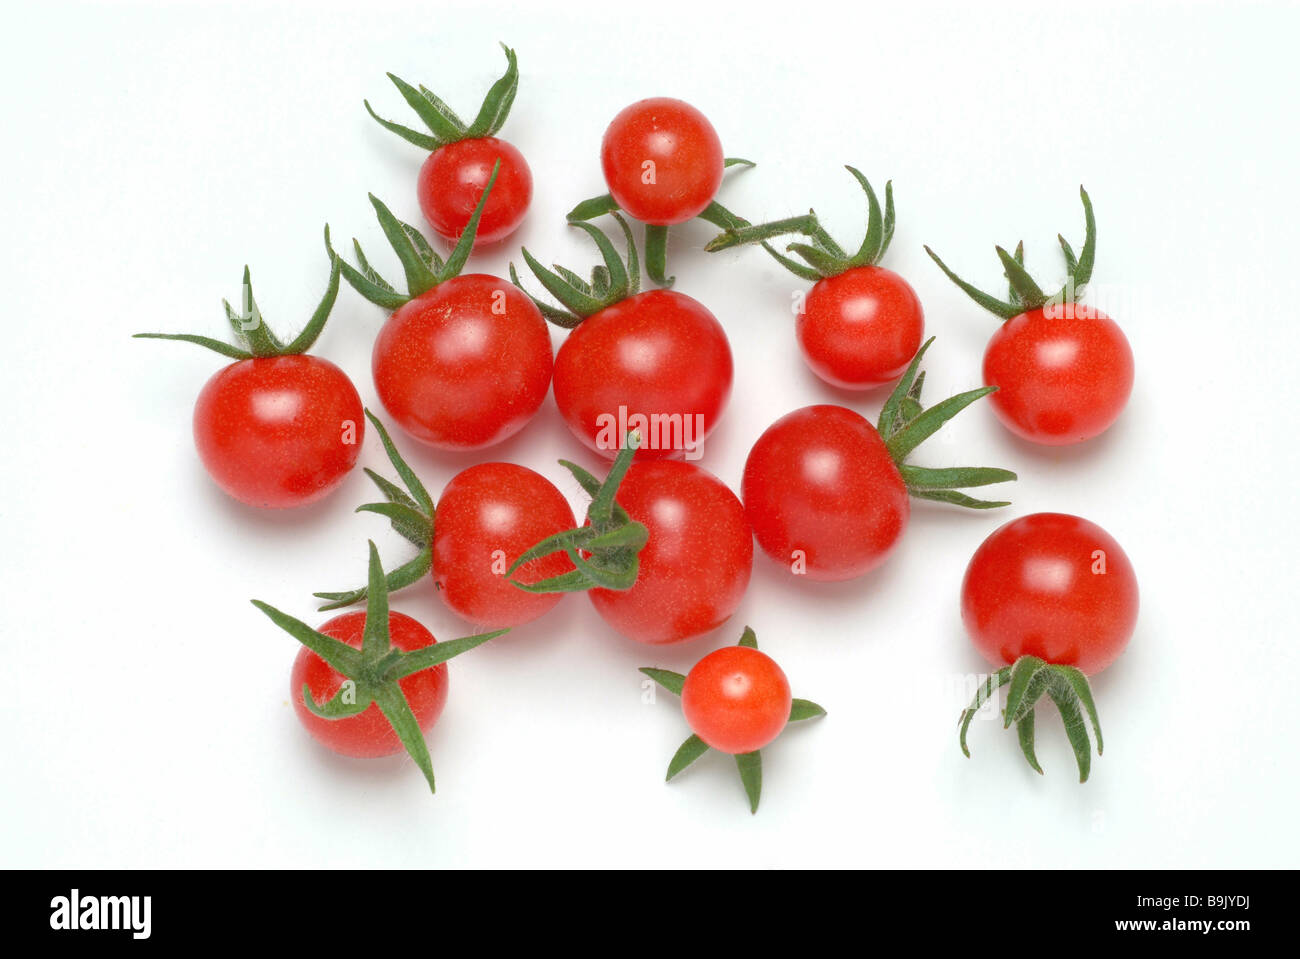 Cherrytomatoe tomates Lycopersicon esculentum Banque D'Images